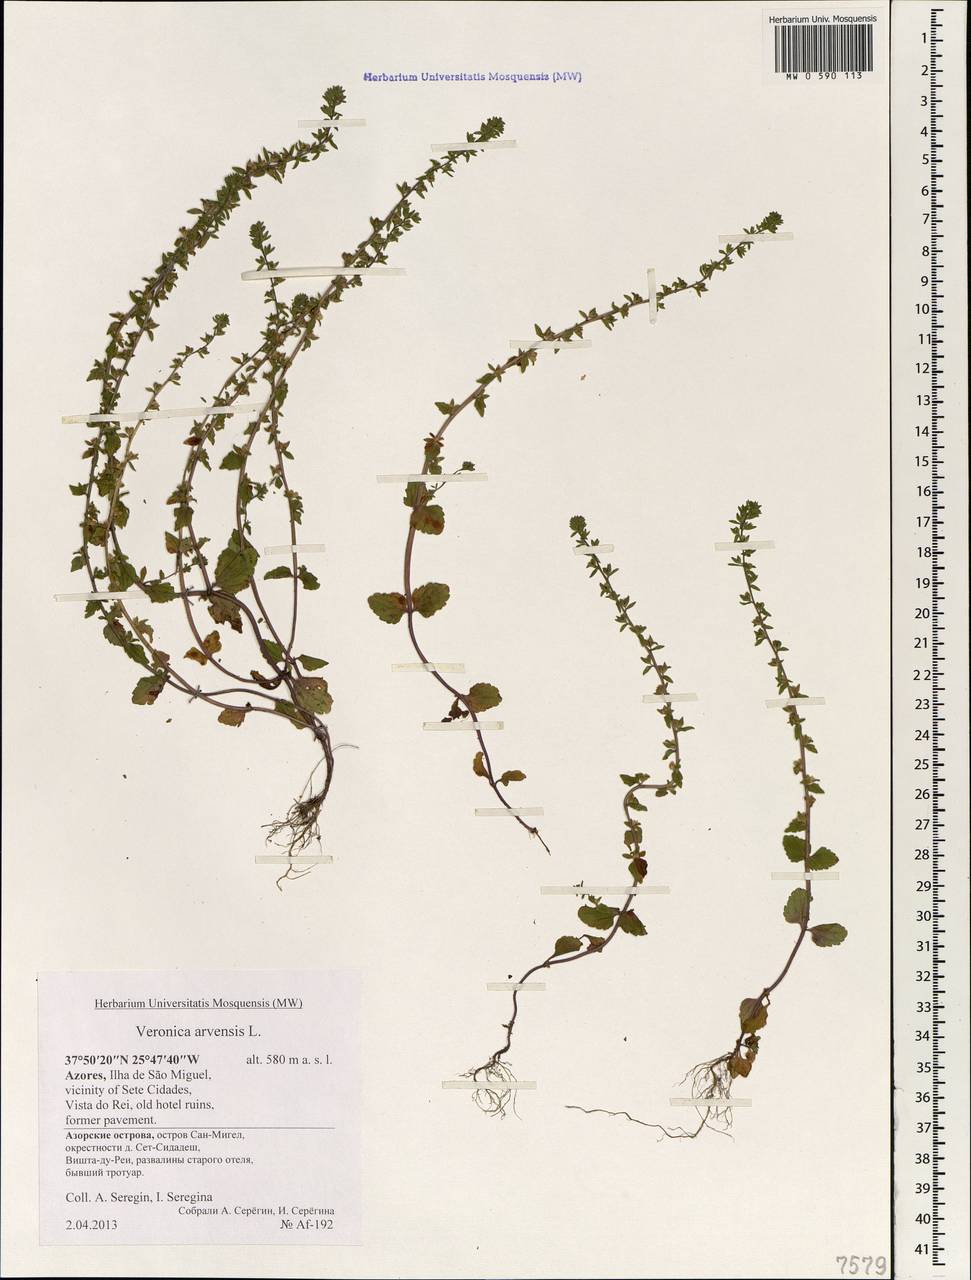 Veronica arvensis L., Africa (AFR) (Portugal)